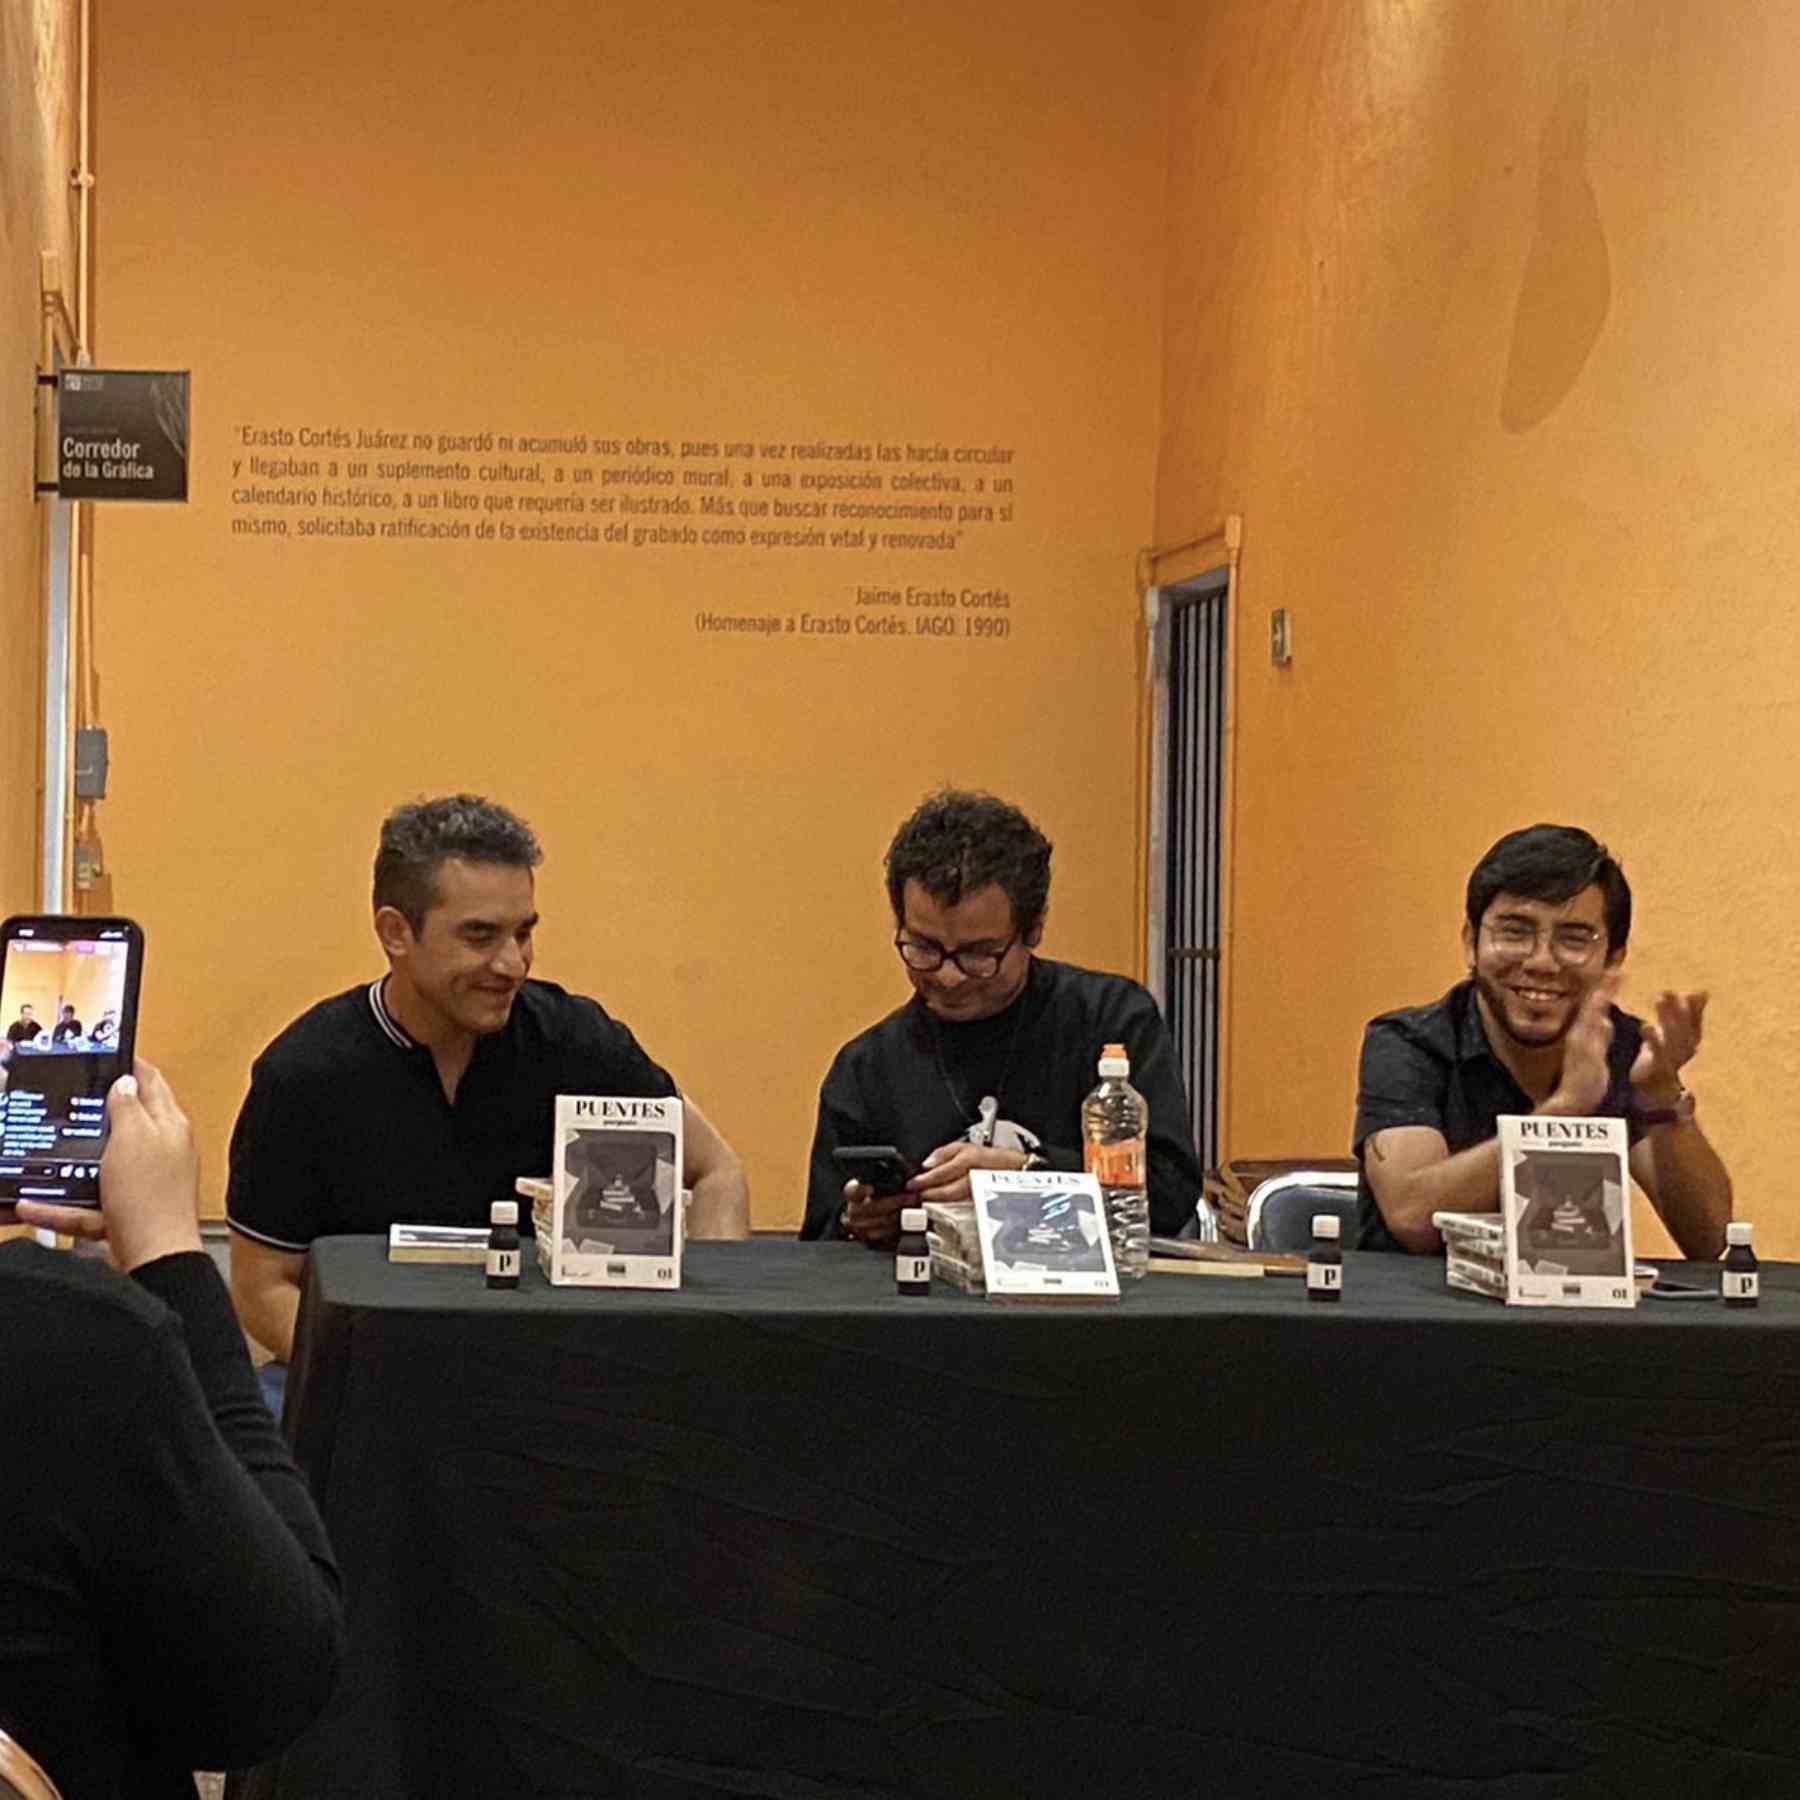 Presentación de Puentes, libro de revista purgante en Puebla